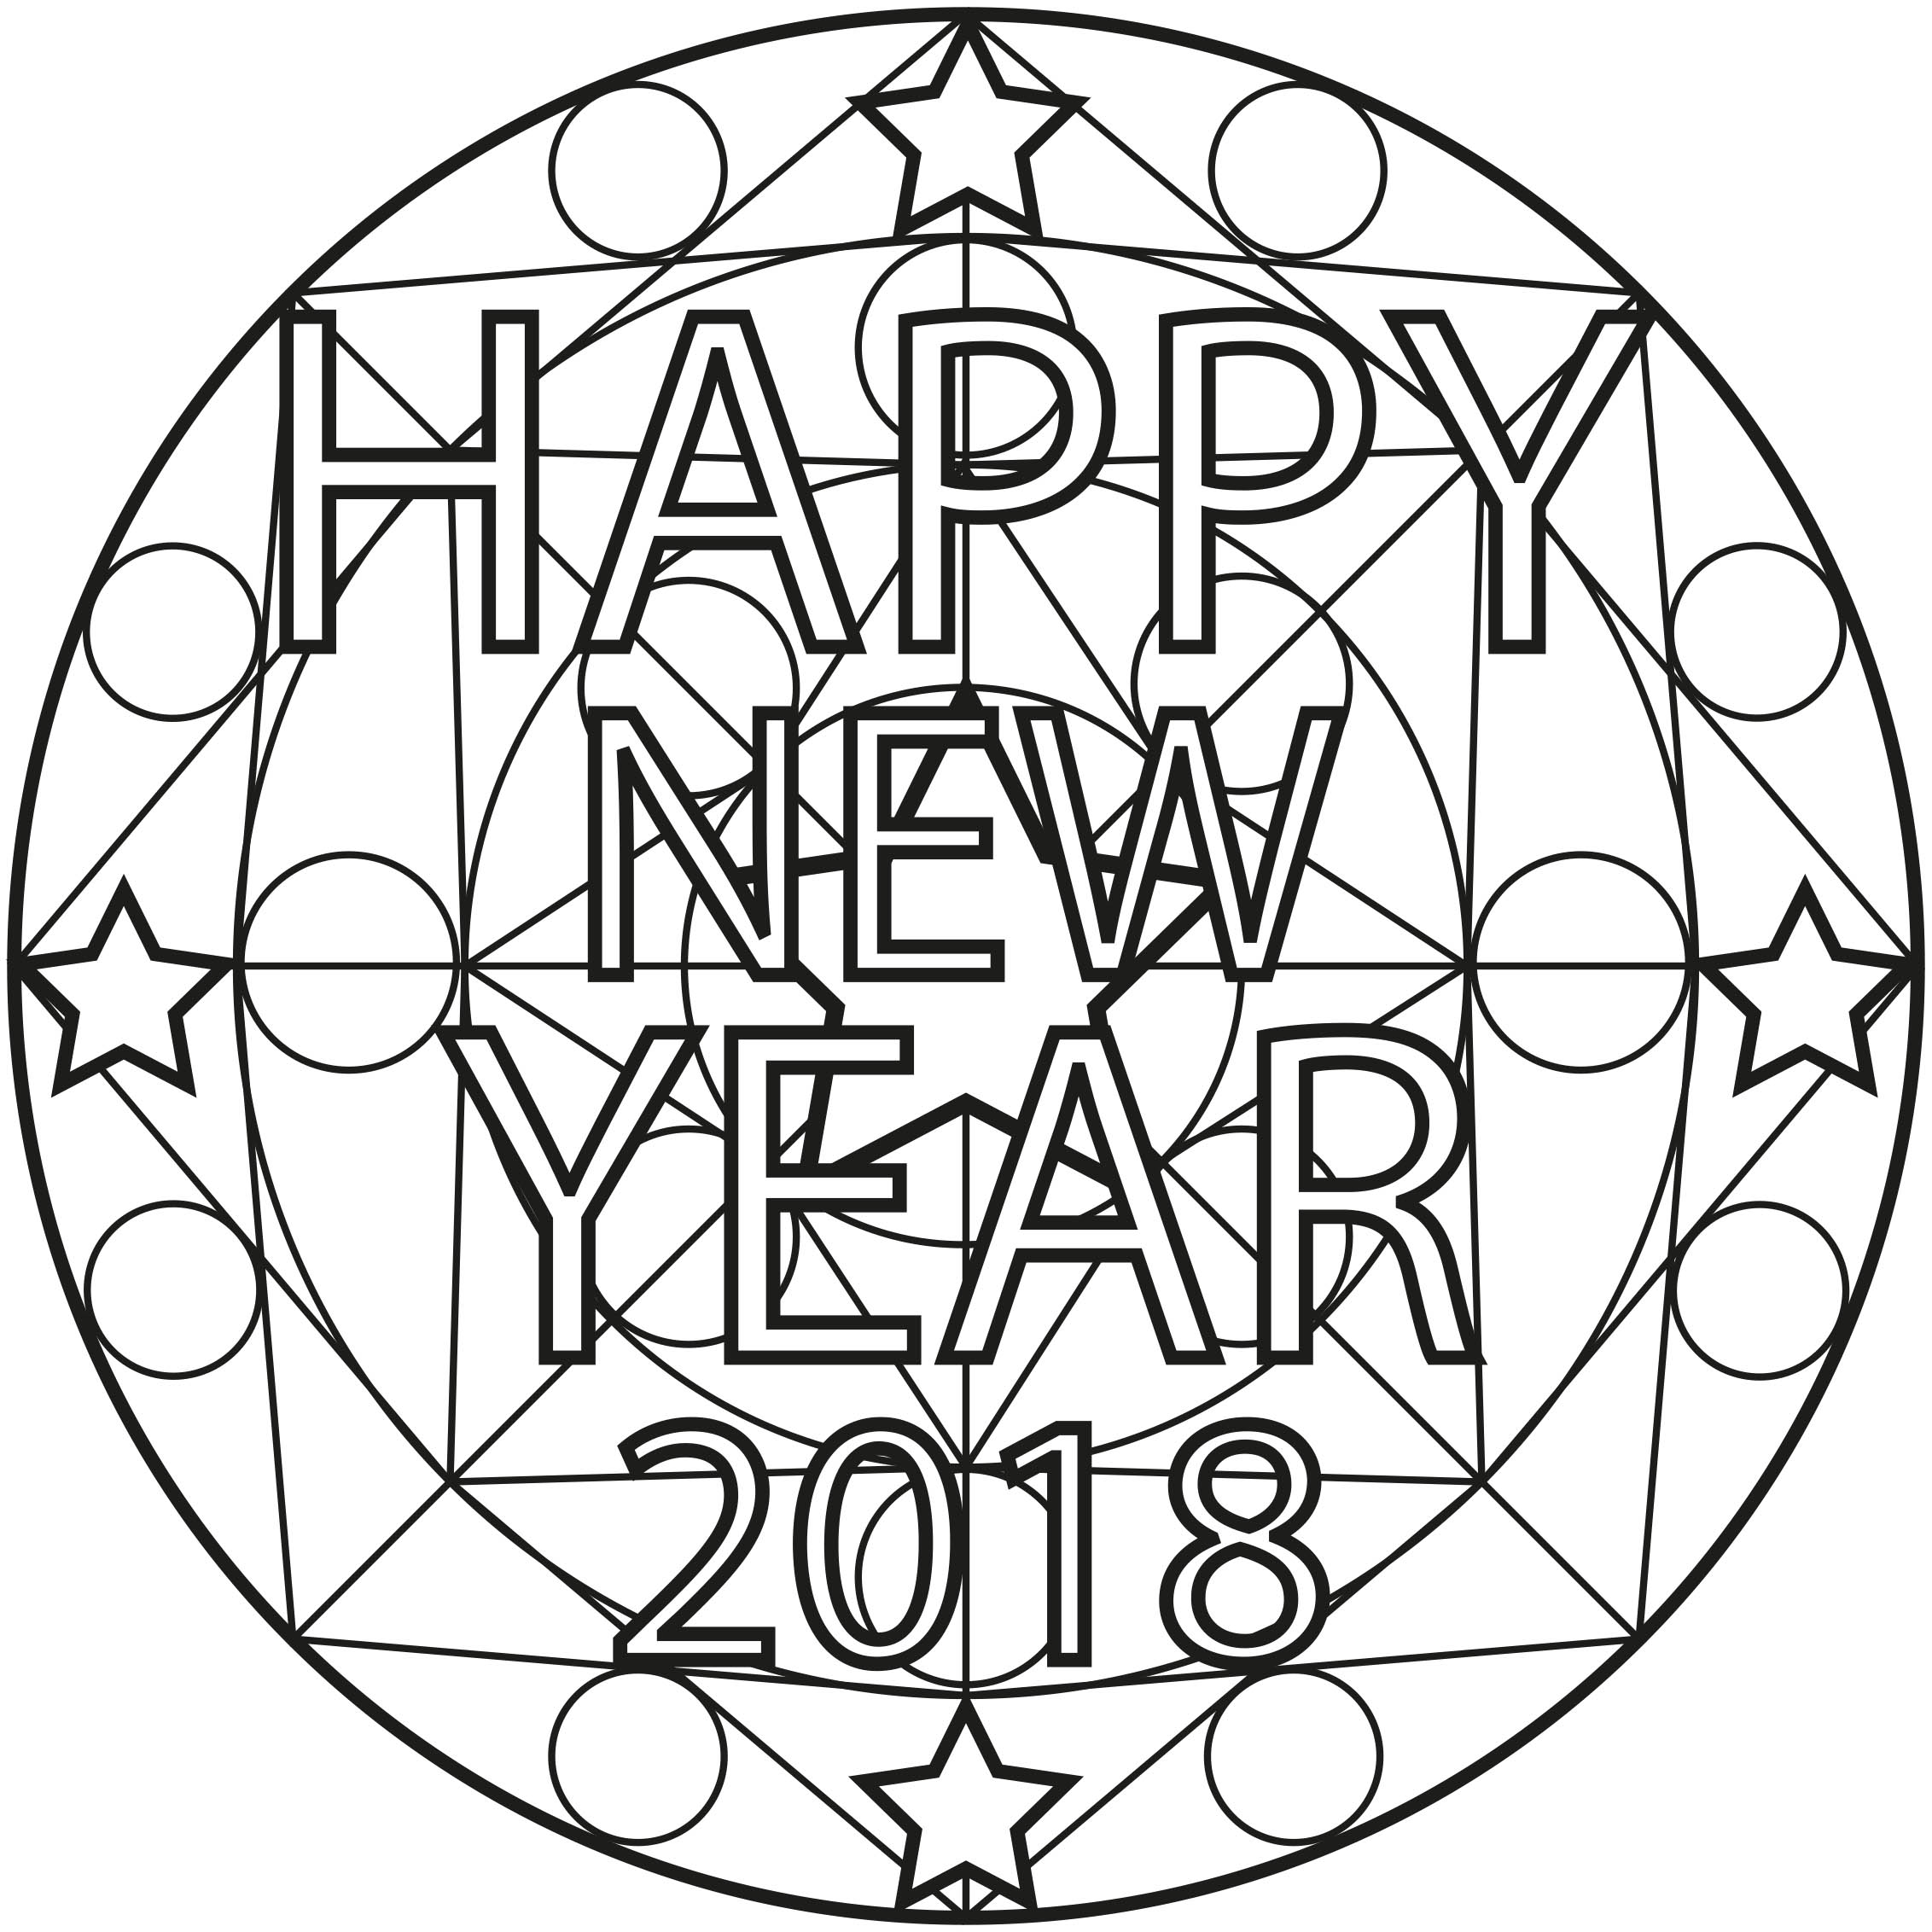 2018 kommt und wir feiern es, indem wir dieses Mandala ausmalen